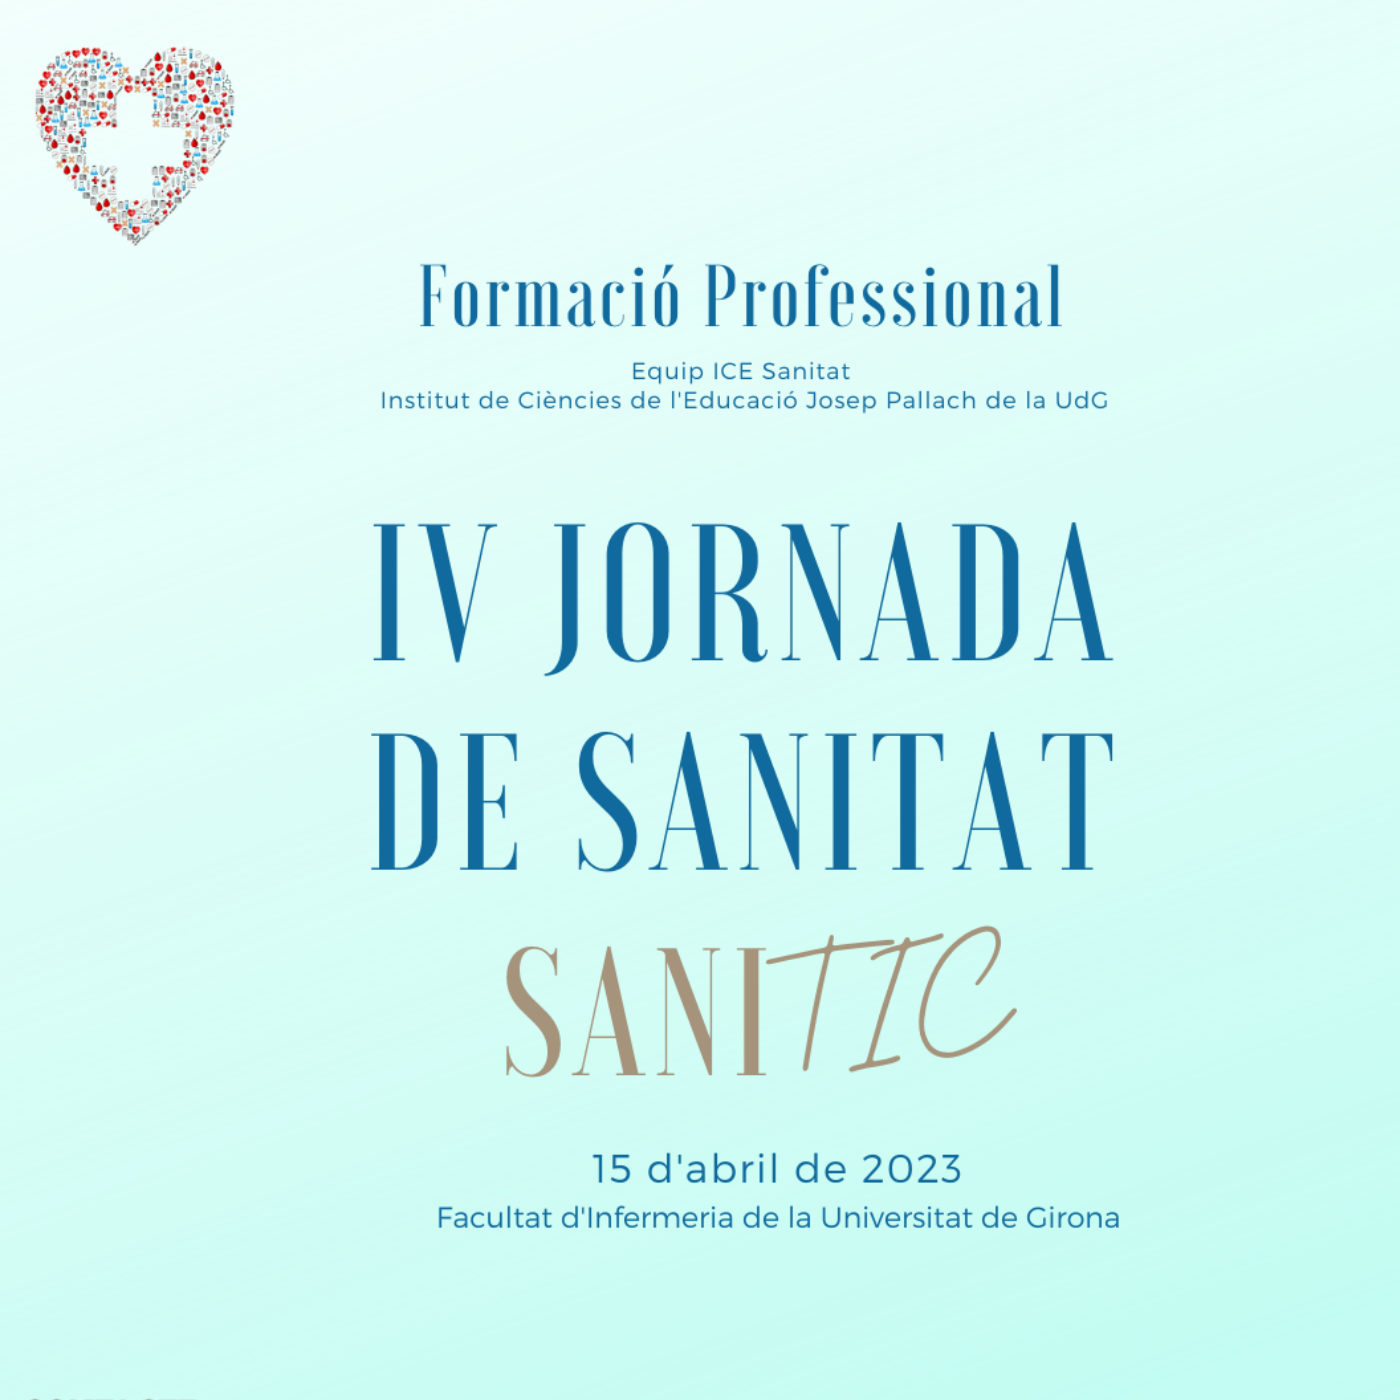 IV Jornada de Sanitat. SANITIC (Formació Professional)